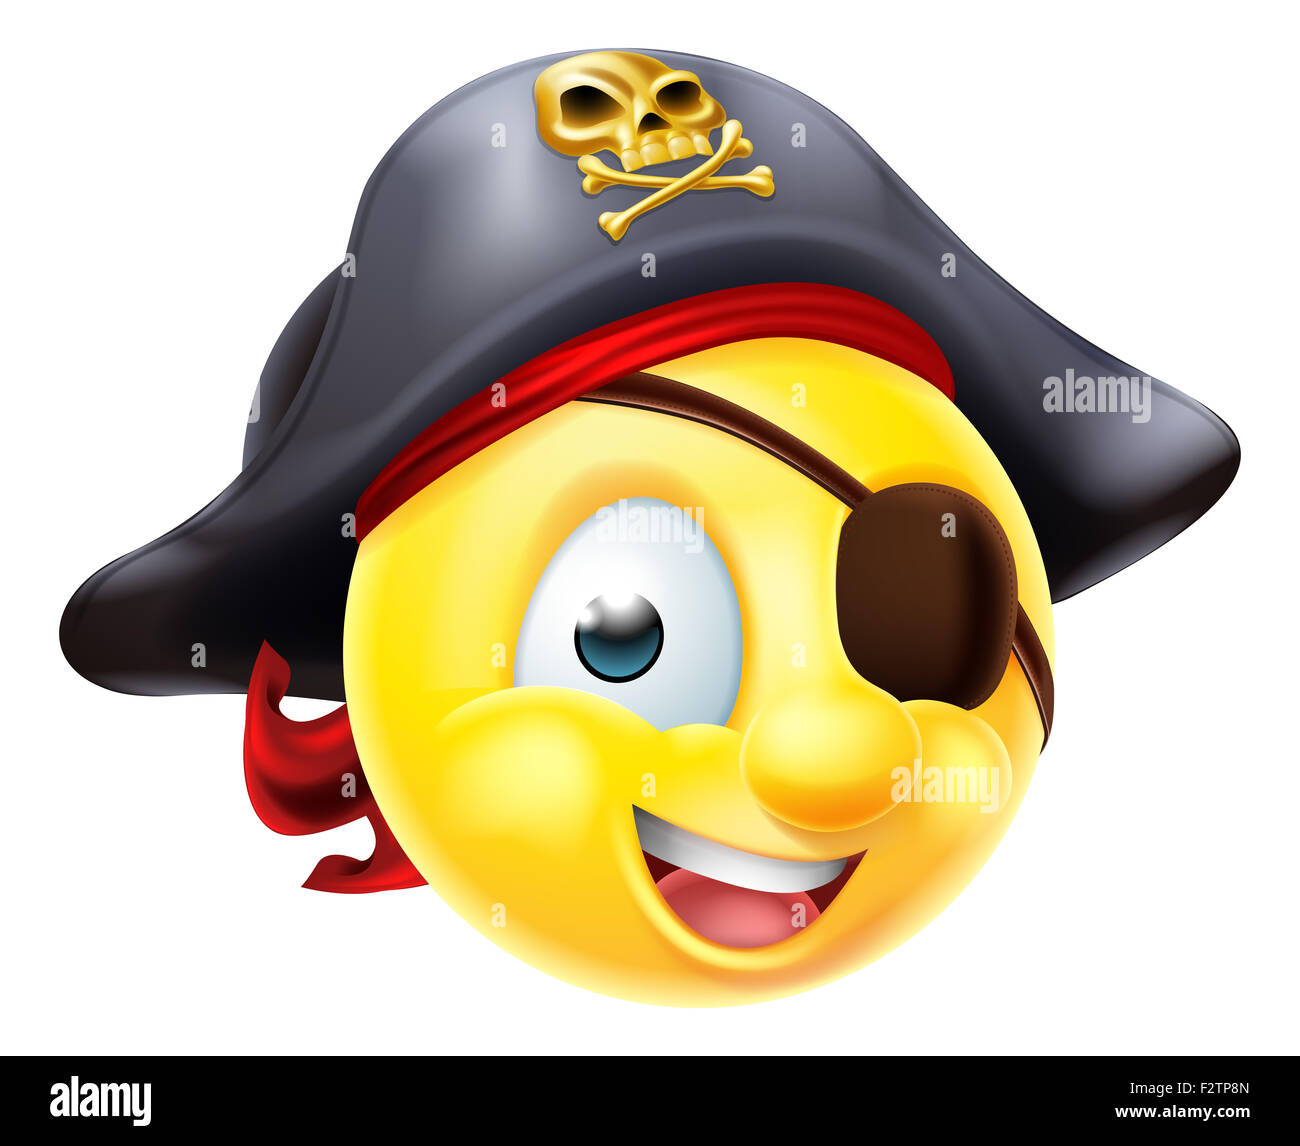 Un pirata emoji emoticono Smiley Face personaje llevaba una gorra y parche  en el ojo Fotografía de stock - Alamy